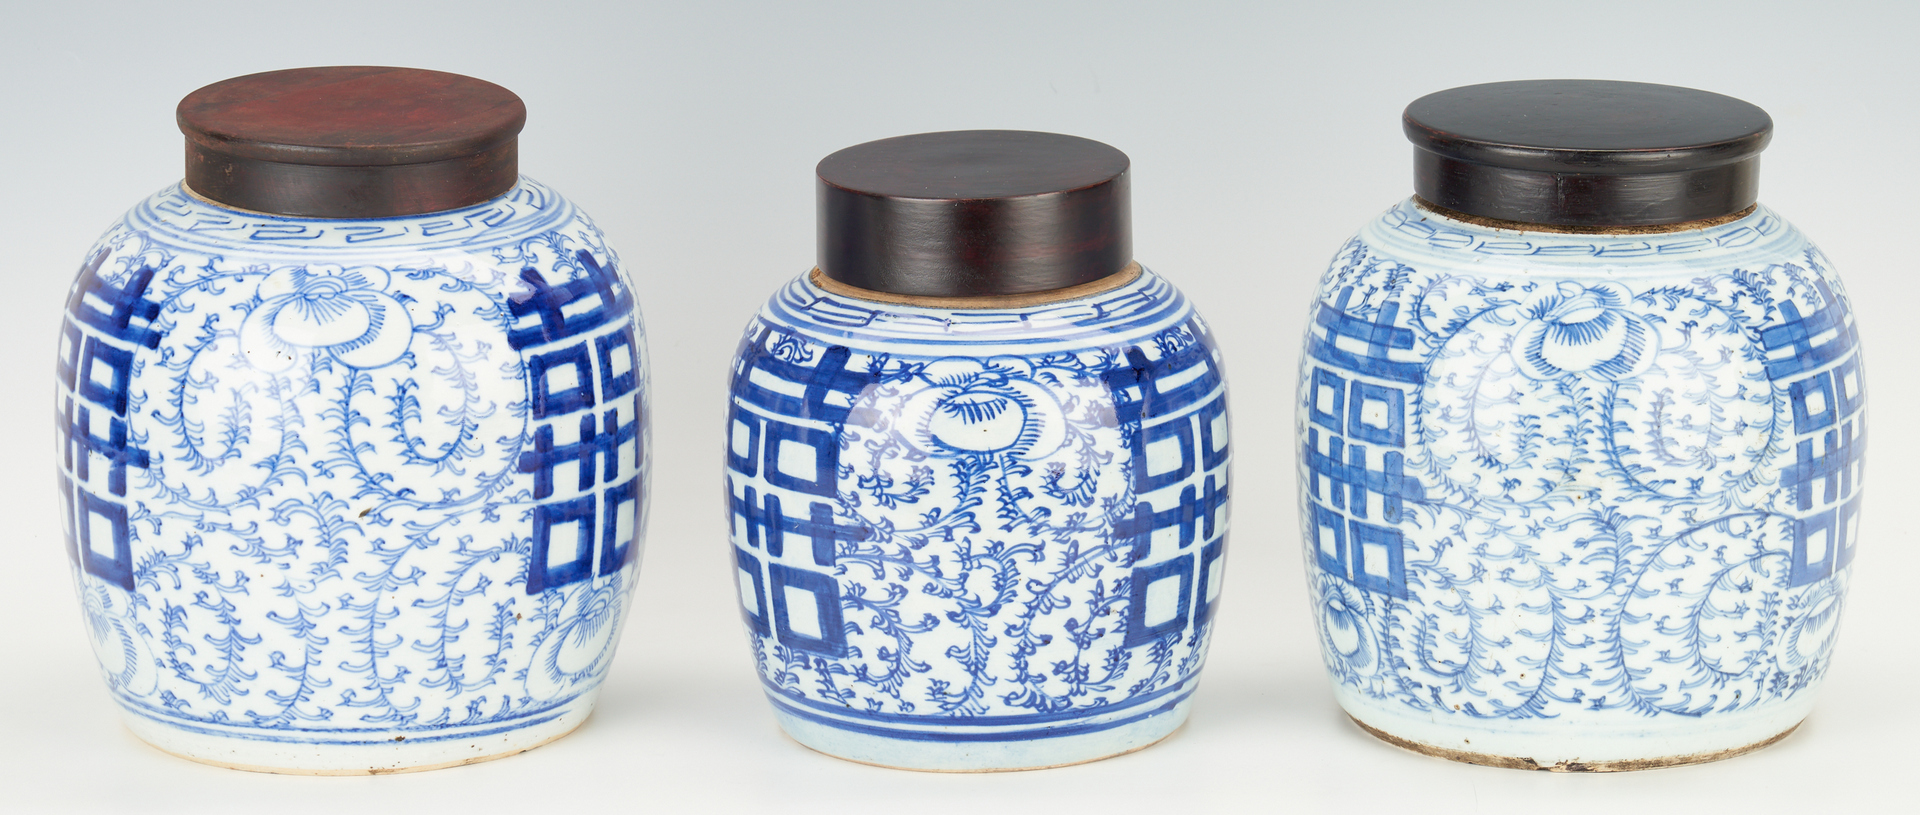 Lot 316: 3 Chinese Blue & White Porcelain Ginger Jars